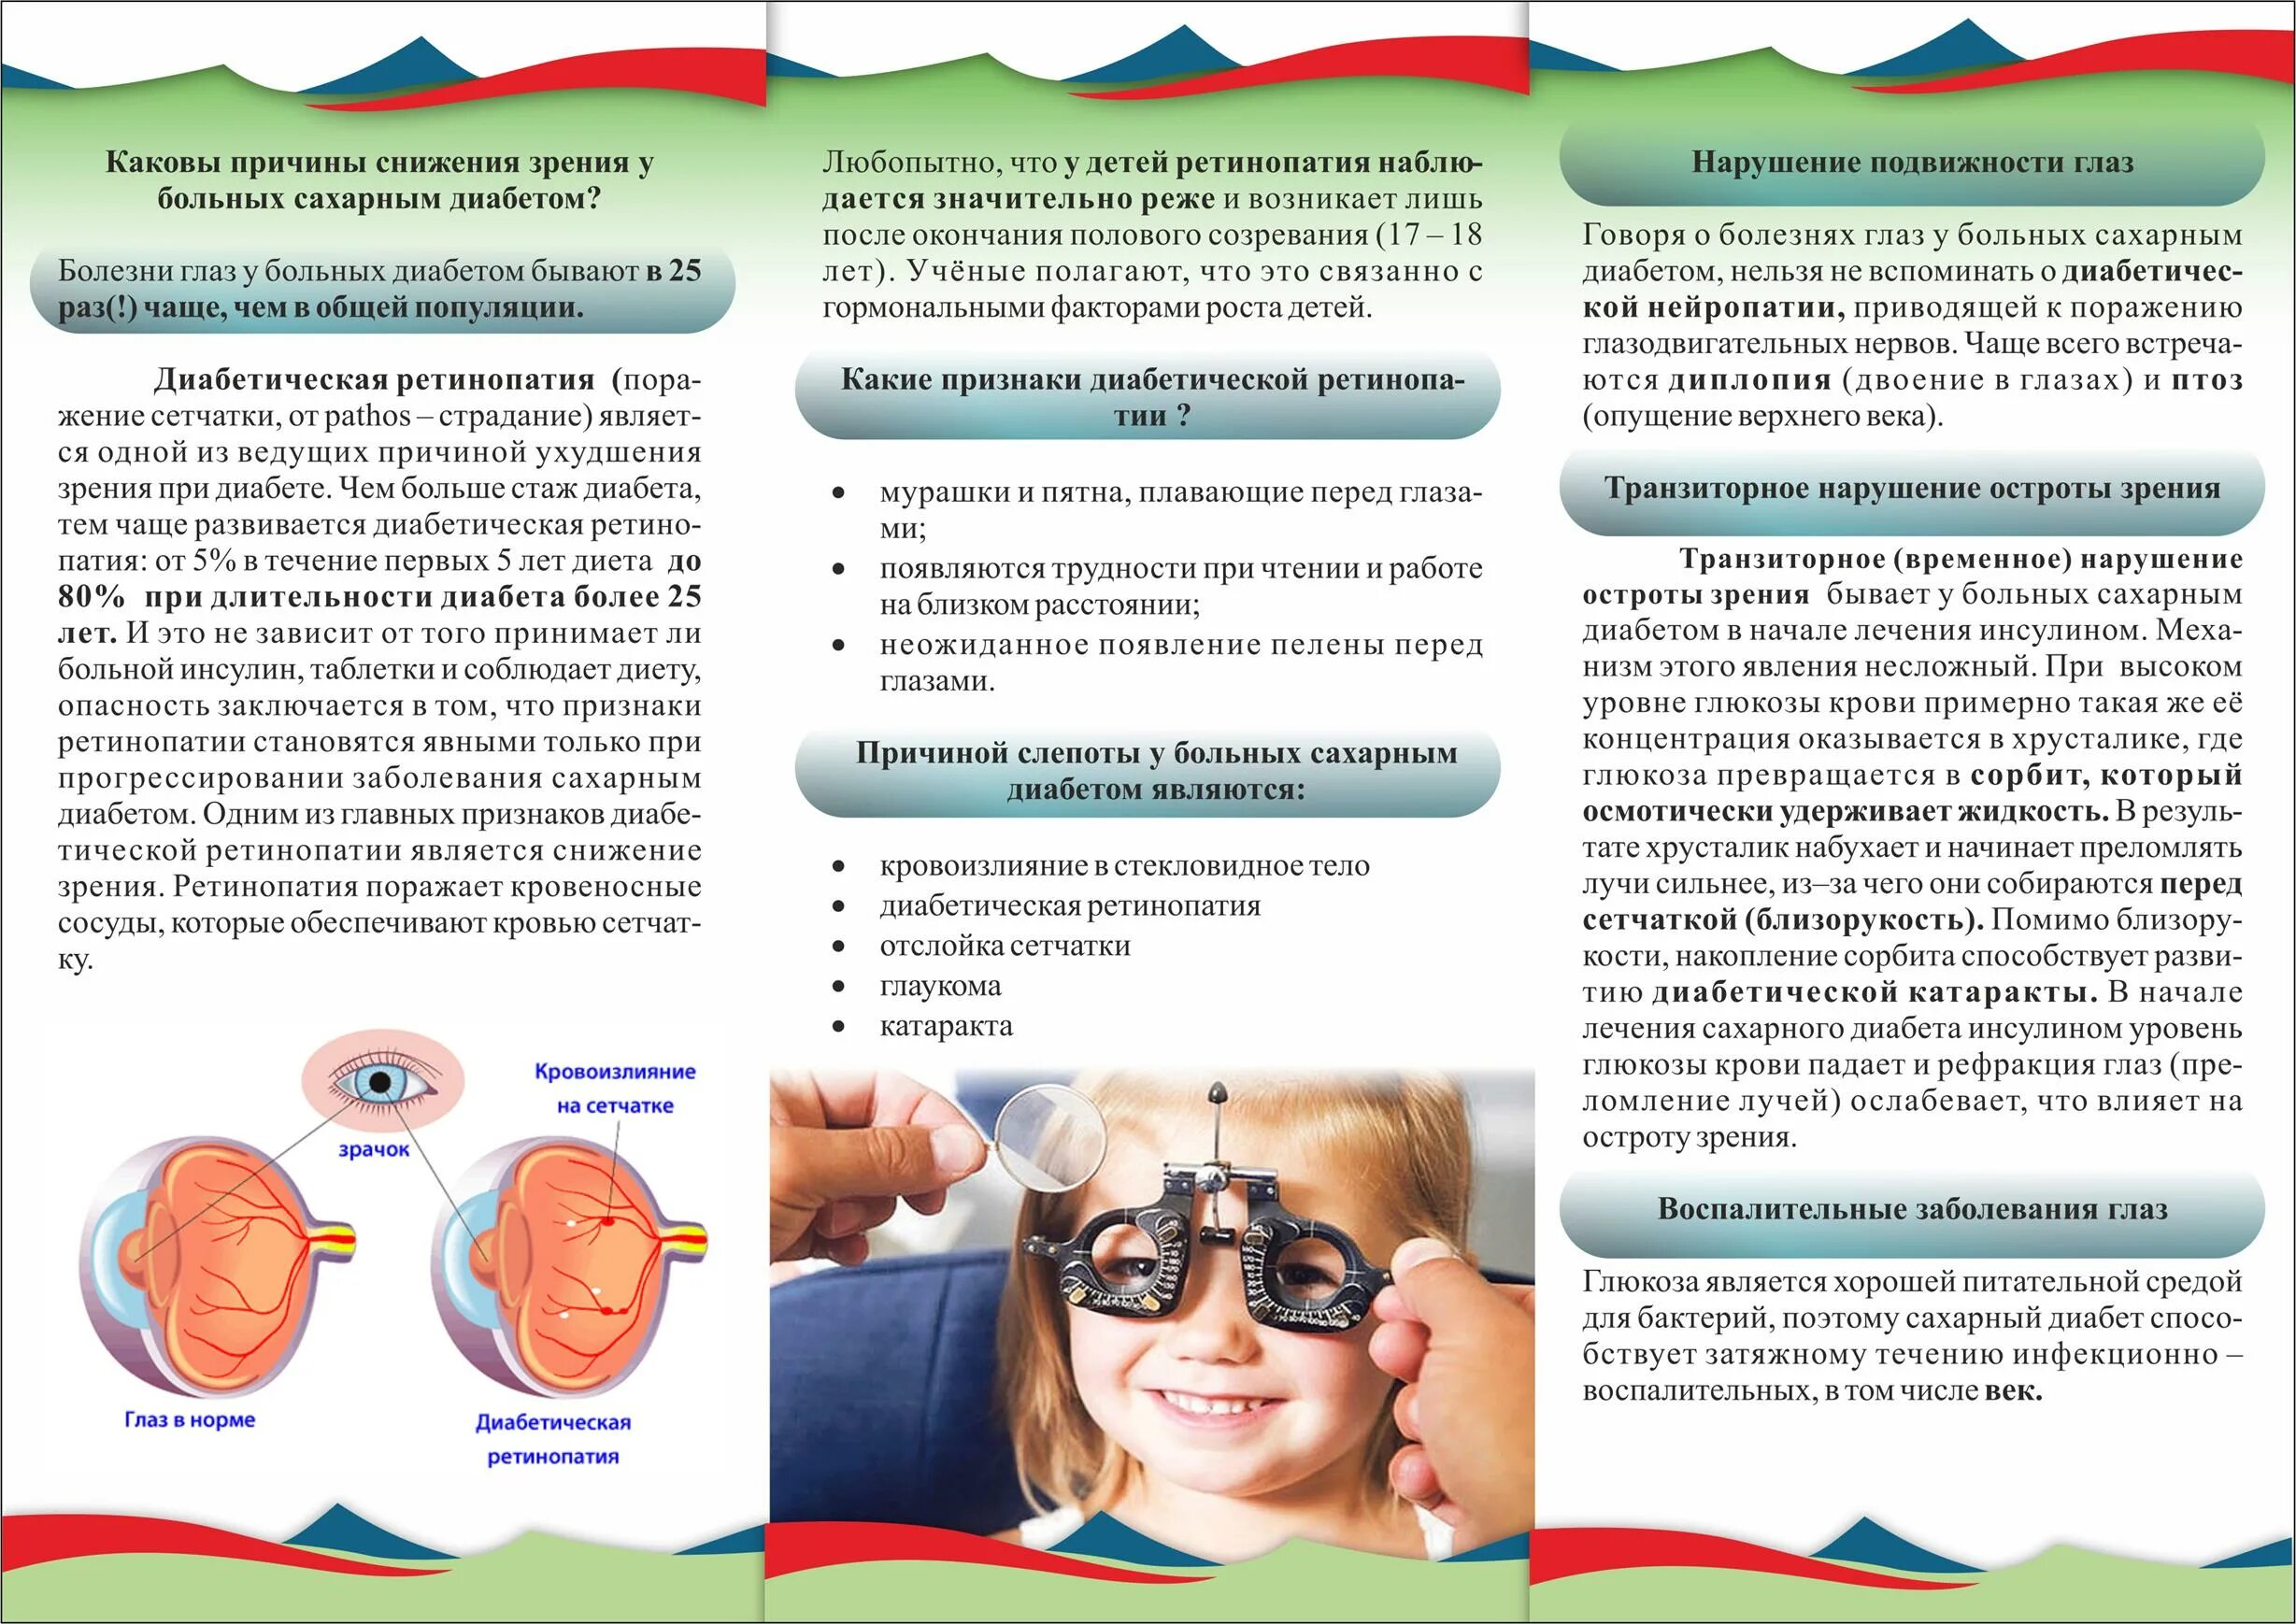 Жалобы на двоение в глазах. Диабетическая ретинопатия буклет. Сахарный диабет у детей брошюра. Рекомендации по профилактике зрения. Профилактика ухудшения зрения.